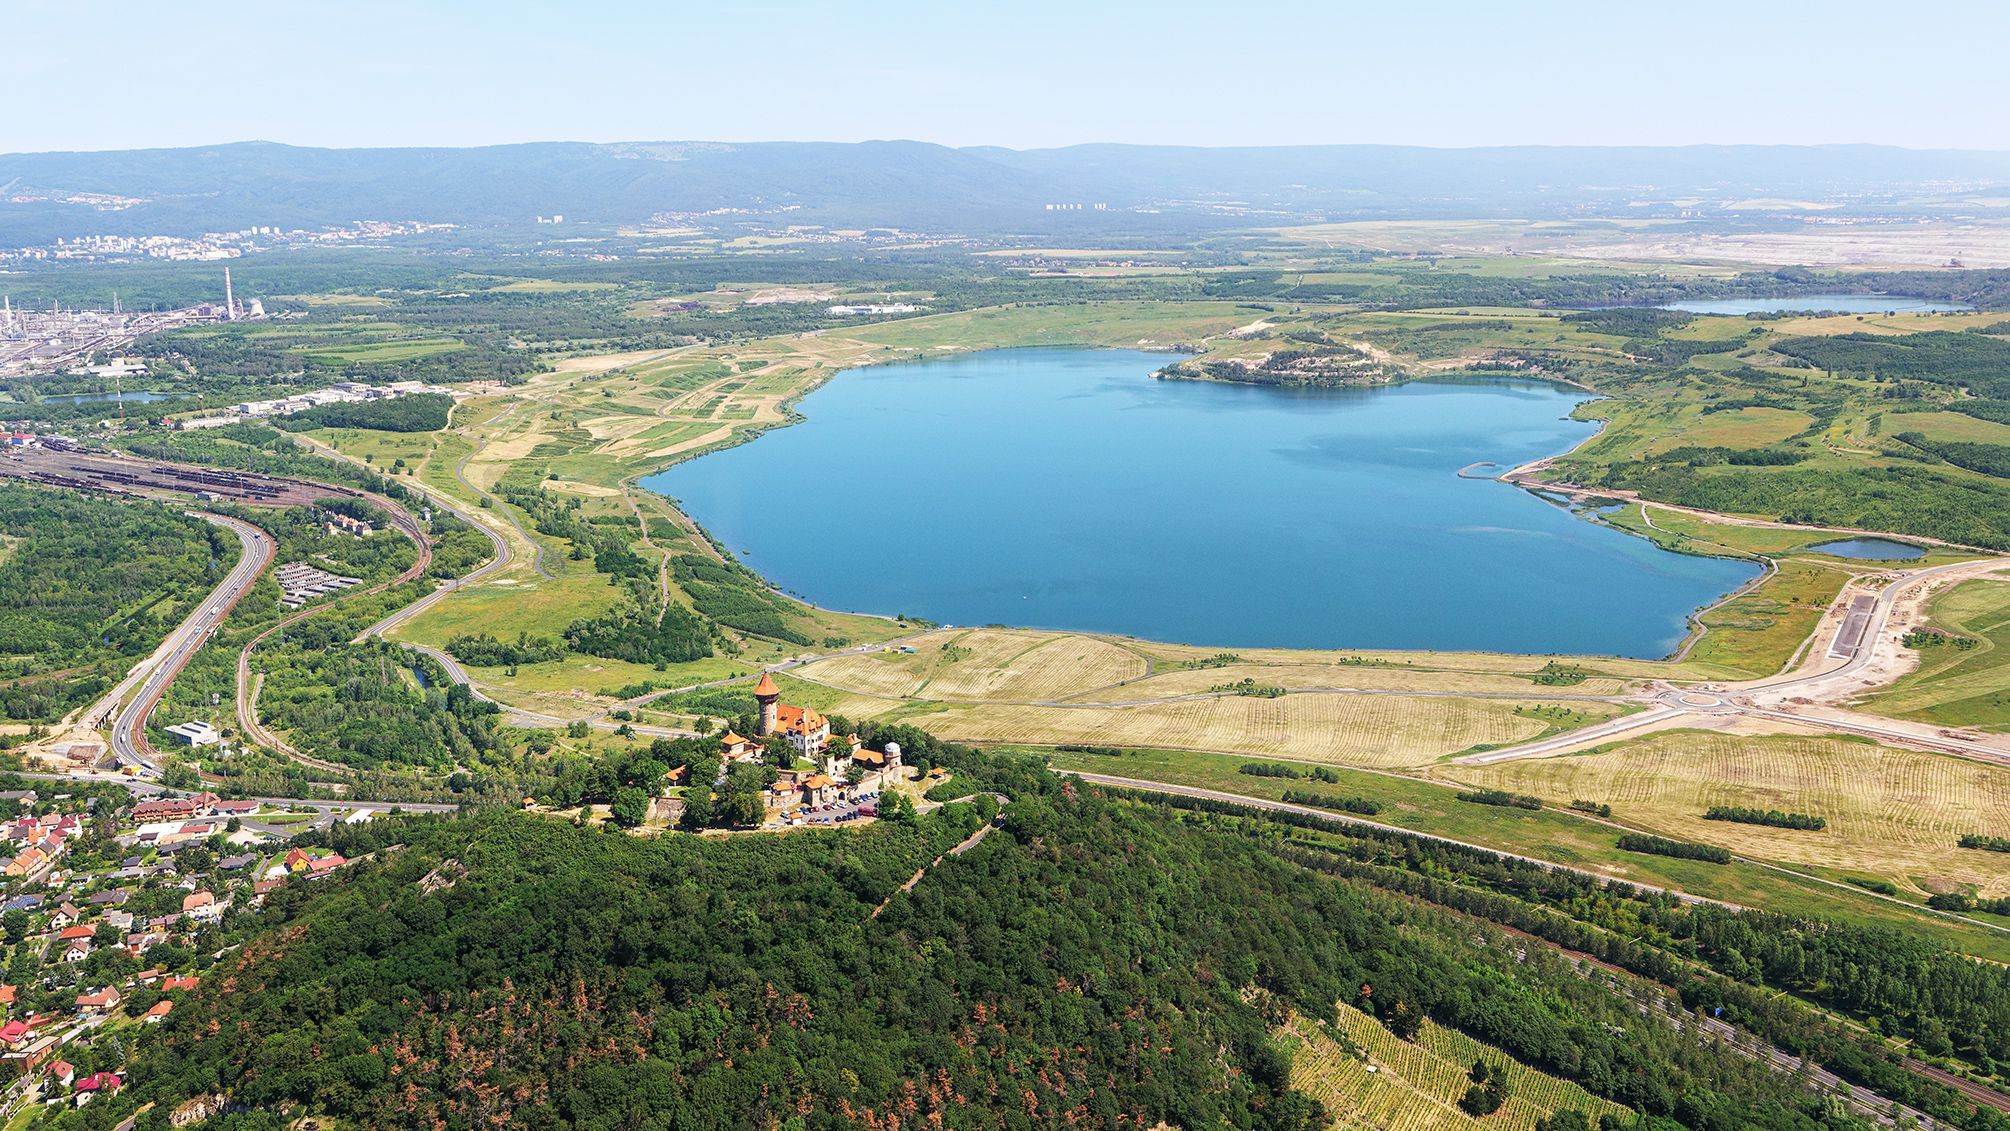 Letecké fotografie povrchových hnědouhelných dolů v severních Čechách